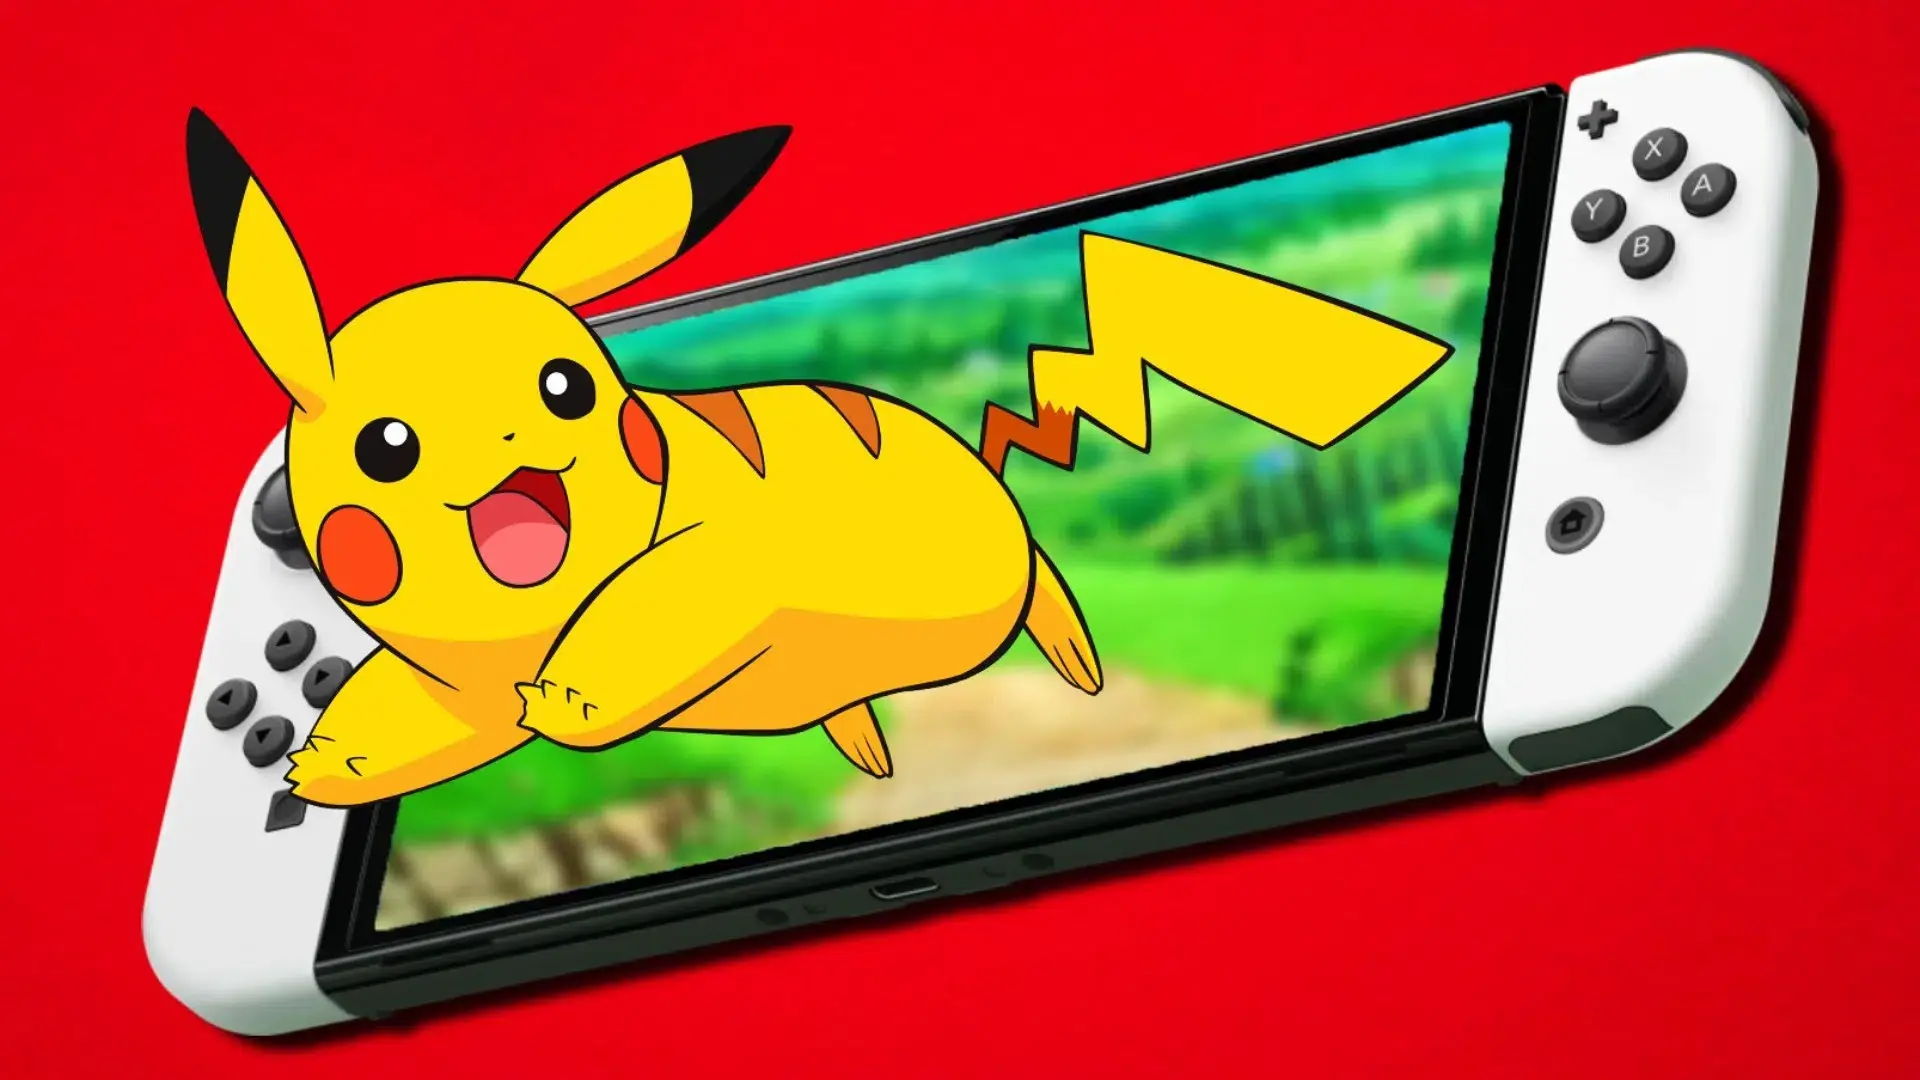 Los juegos de Pokémon que puedes encontrar en Nintendo Switch